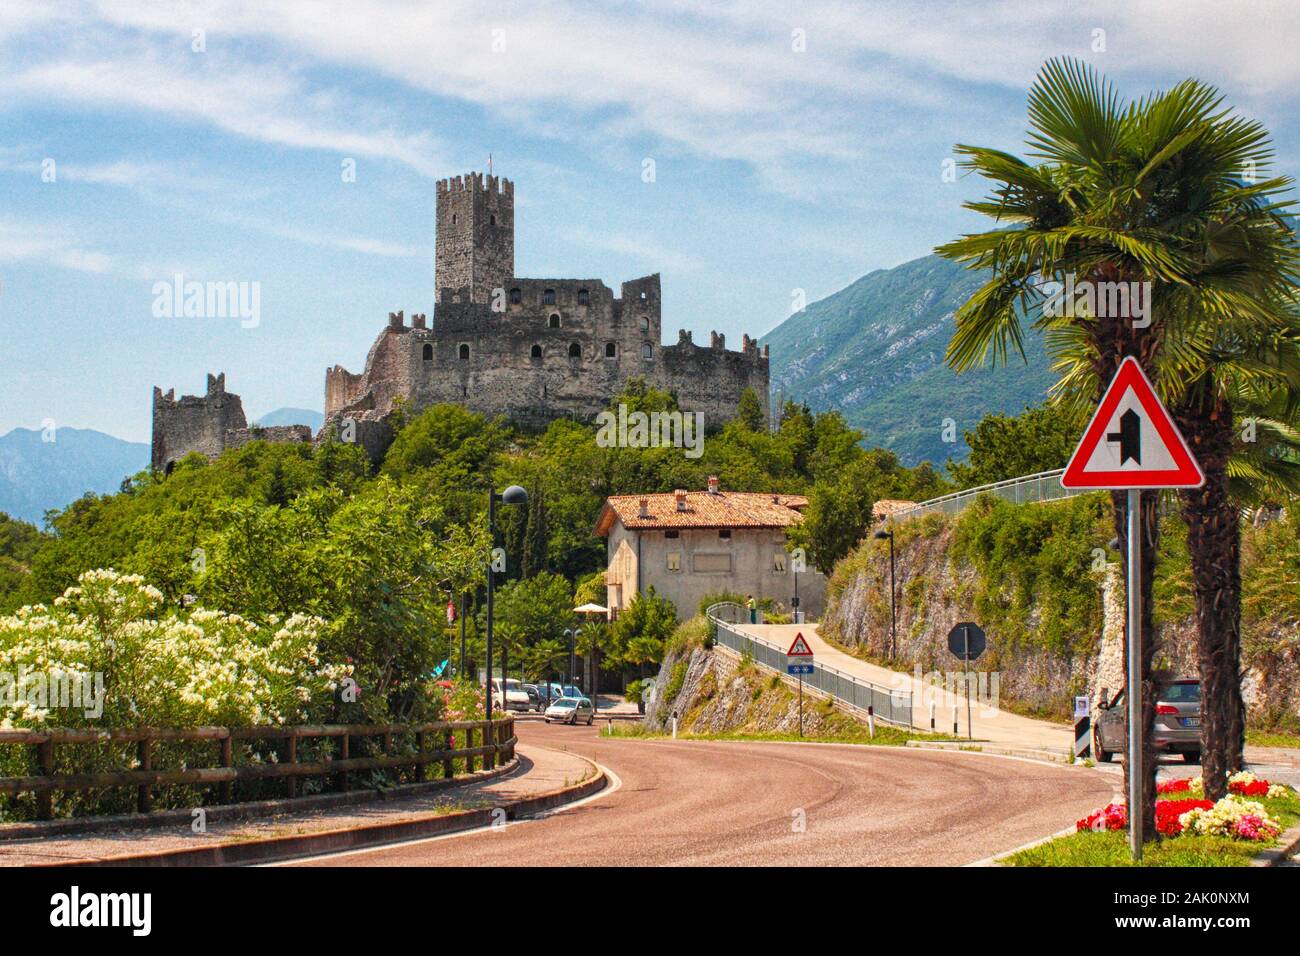 Antico castello con torre in collina. Strada, palme e cespugli in primo piano, Alpi montagne sullo sfondo, Drena, Italia Foto Stock